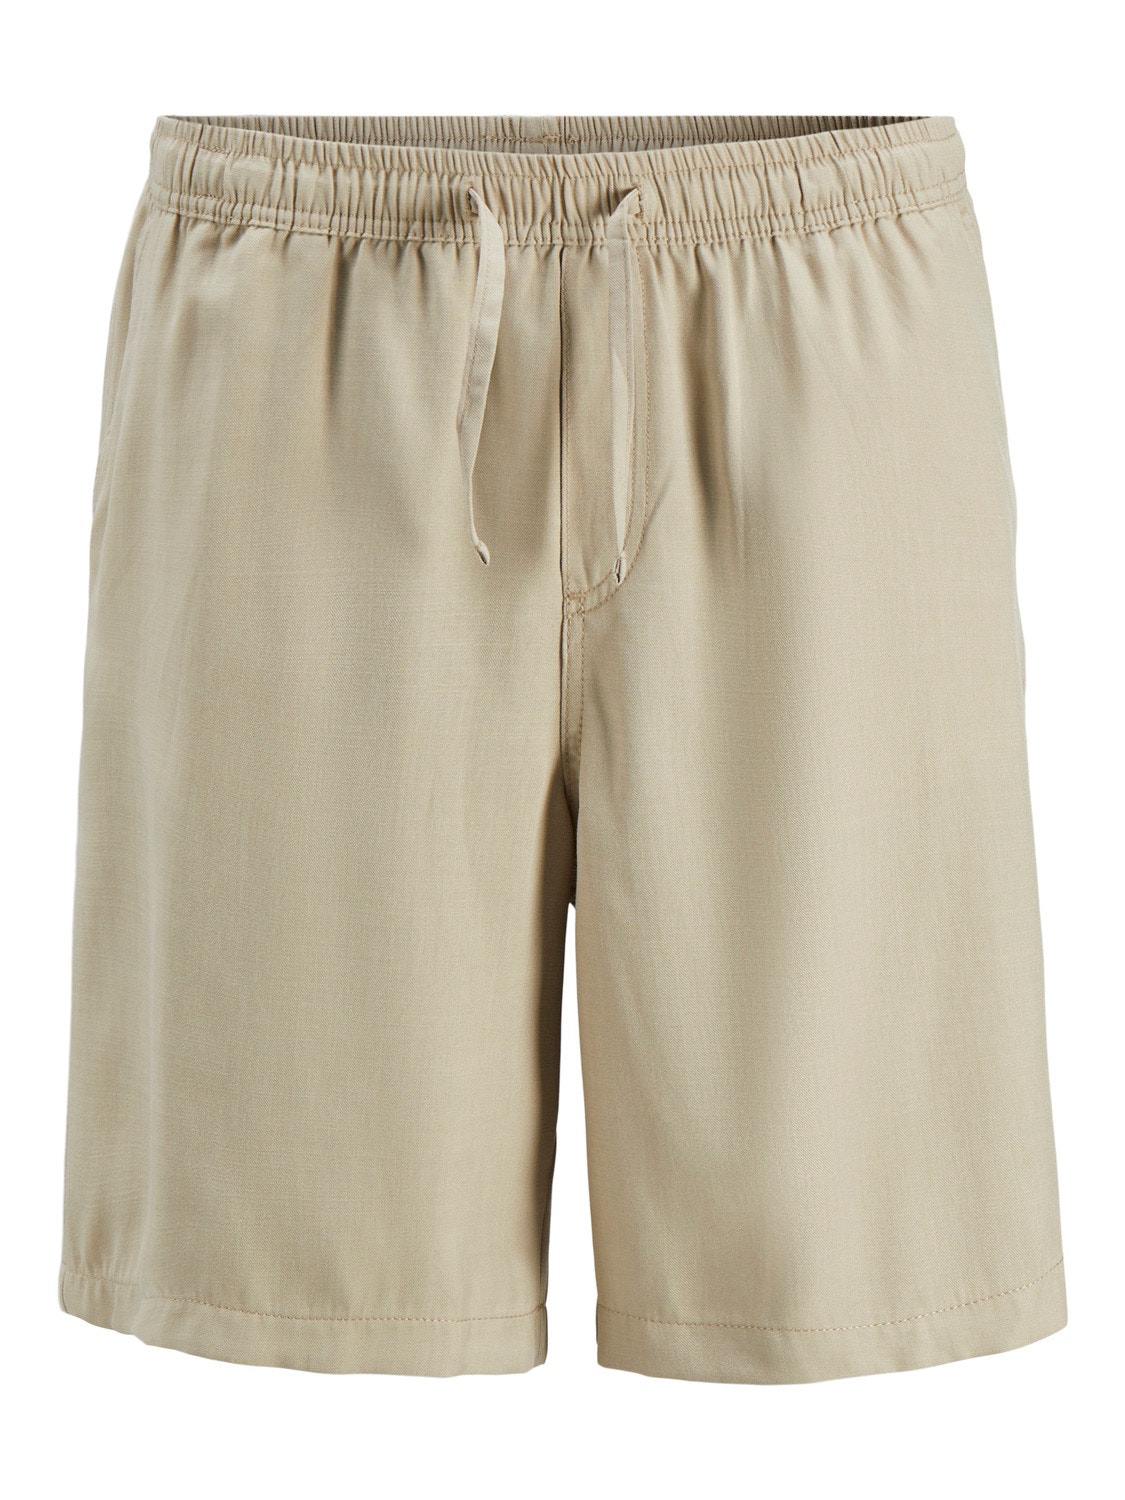 Jack & Jones Loose Fit Shorts -Fields Of Rye - 12253026